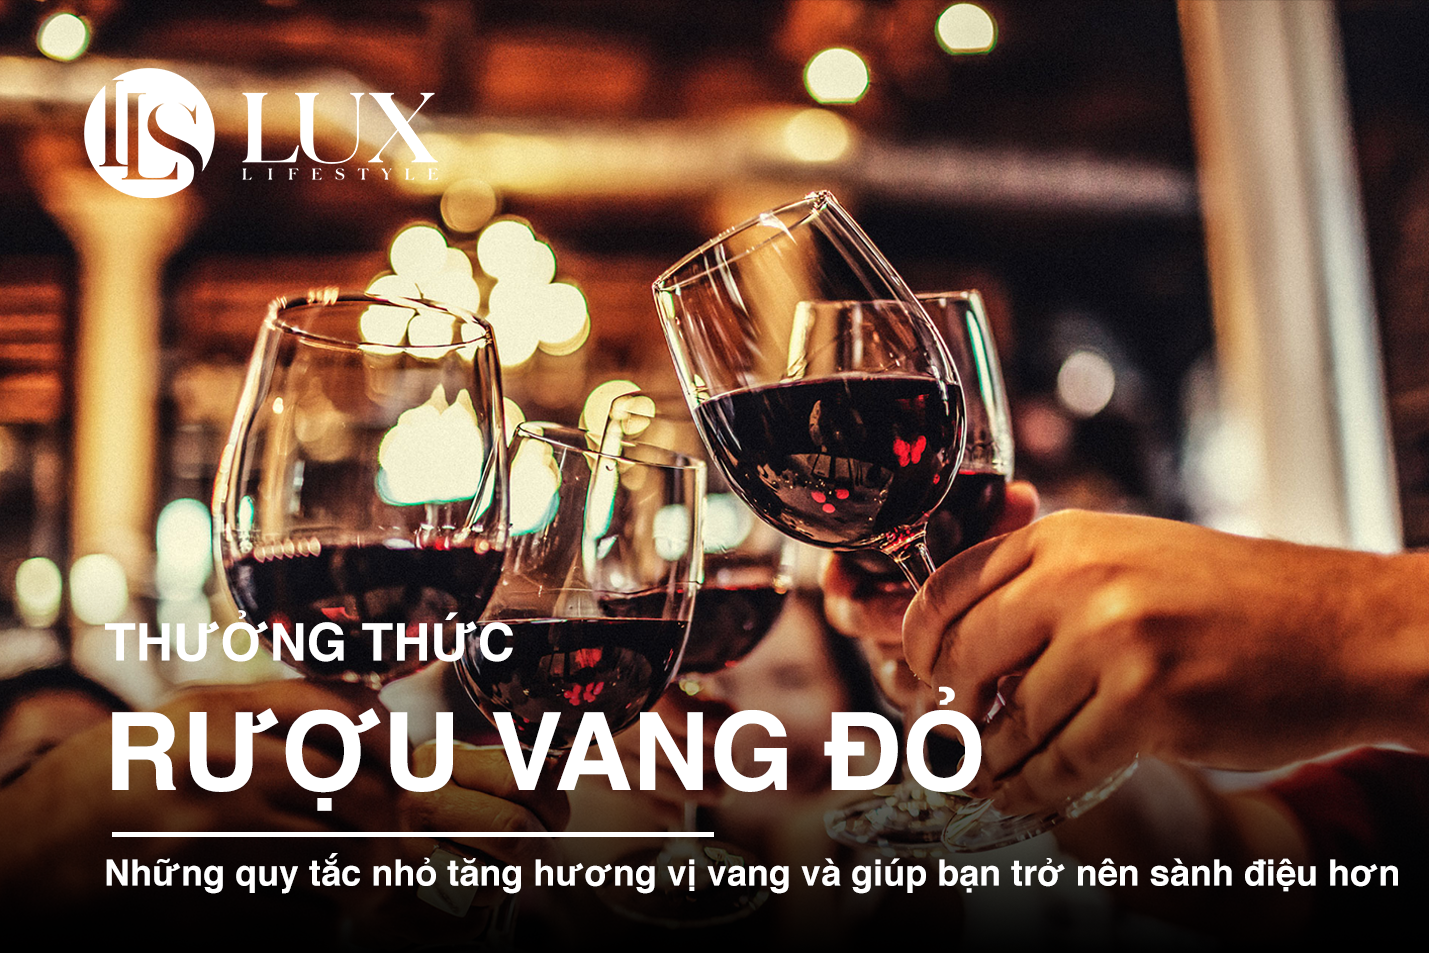 ruou-vang-do-thuong-thuc-nhu-the-nao-cho-dung-1645534815.png